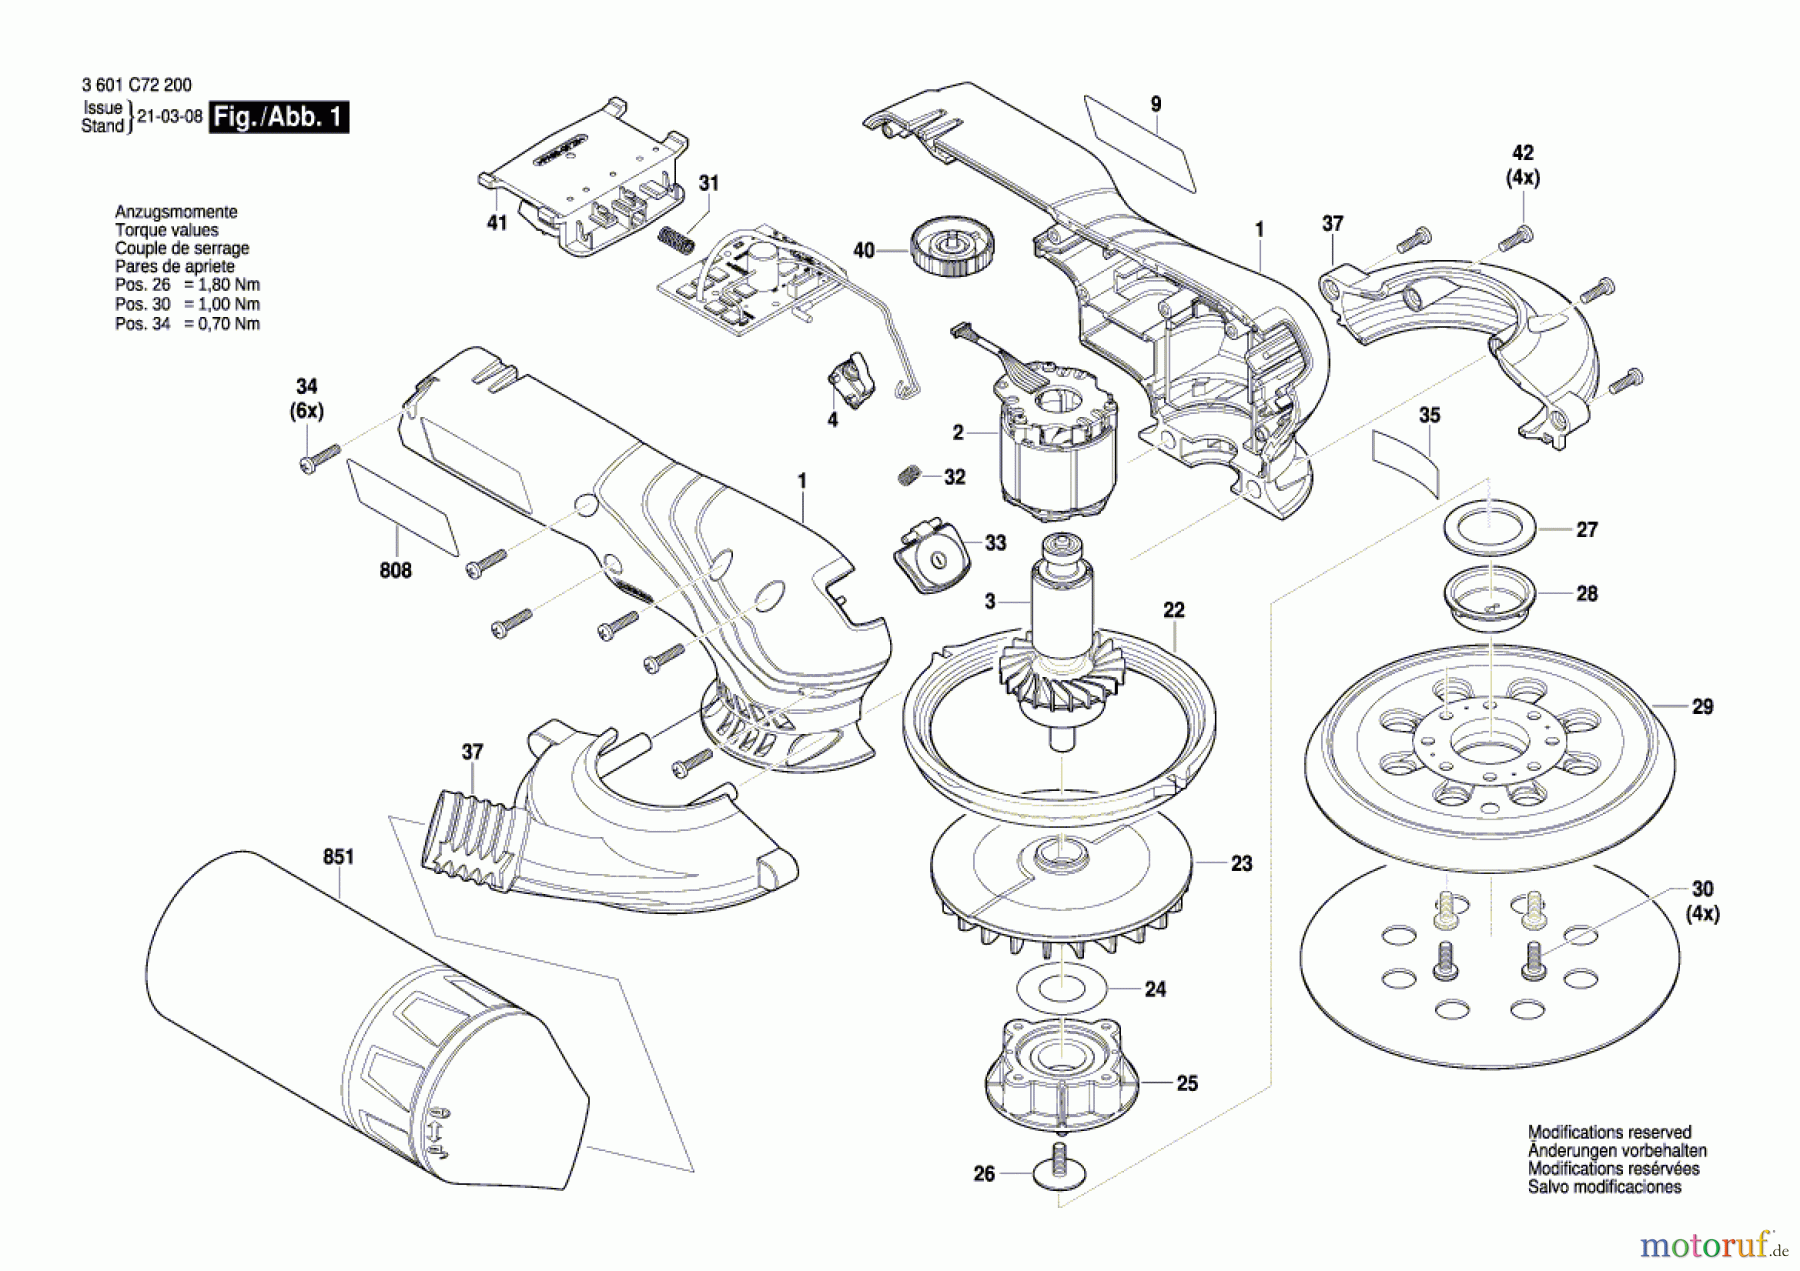  Bosch Werkzeug Exzenterschleifer GEX 18V-125 Seite 1